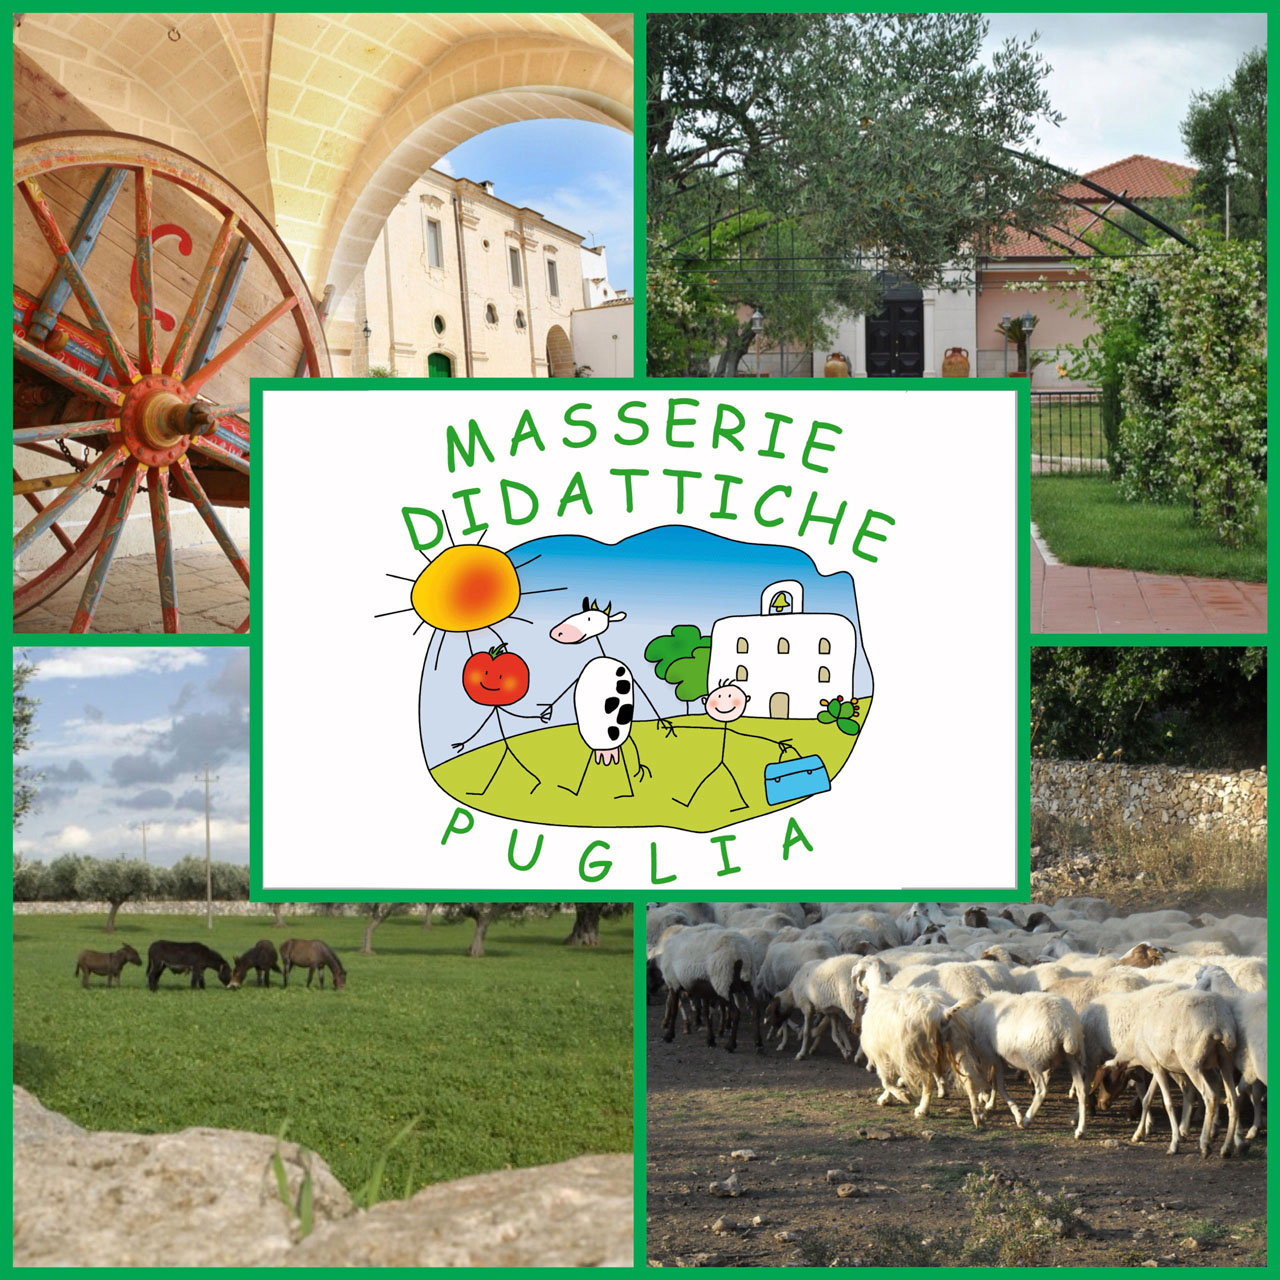 Il progetto Masserie Didattiche di Puglia ad Acaya